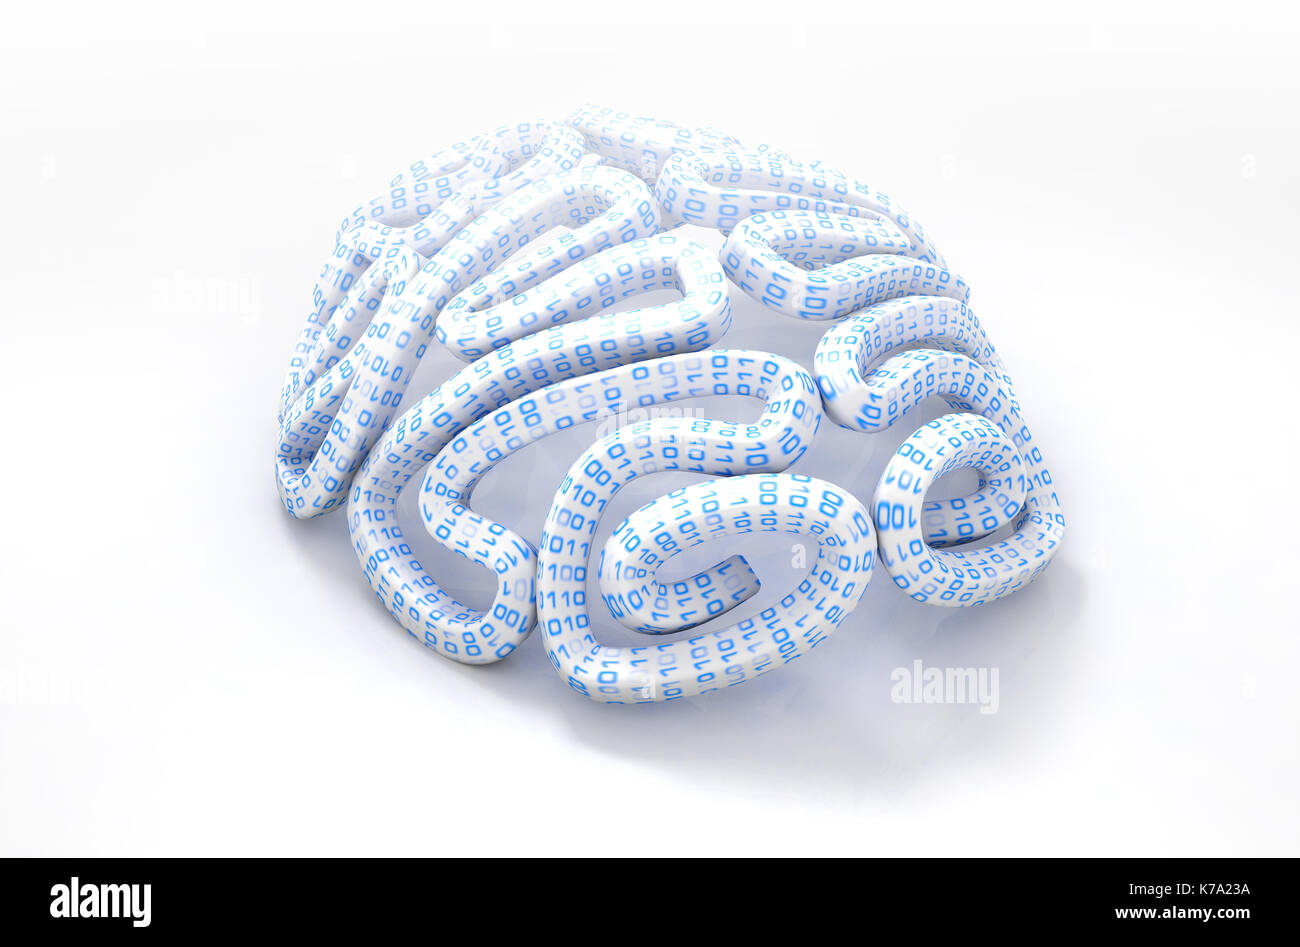 Eine stilisierte Gehirn strukturiert mit binären Computer daten code Darstellung künstliche Intelligenz auf einem isolierten weißen Hintergrund - 3D-Rendering Stockfoto